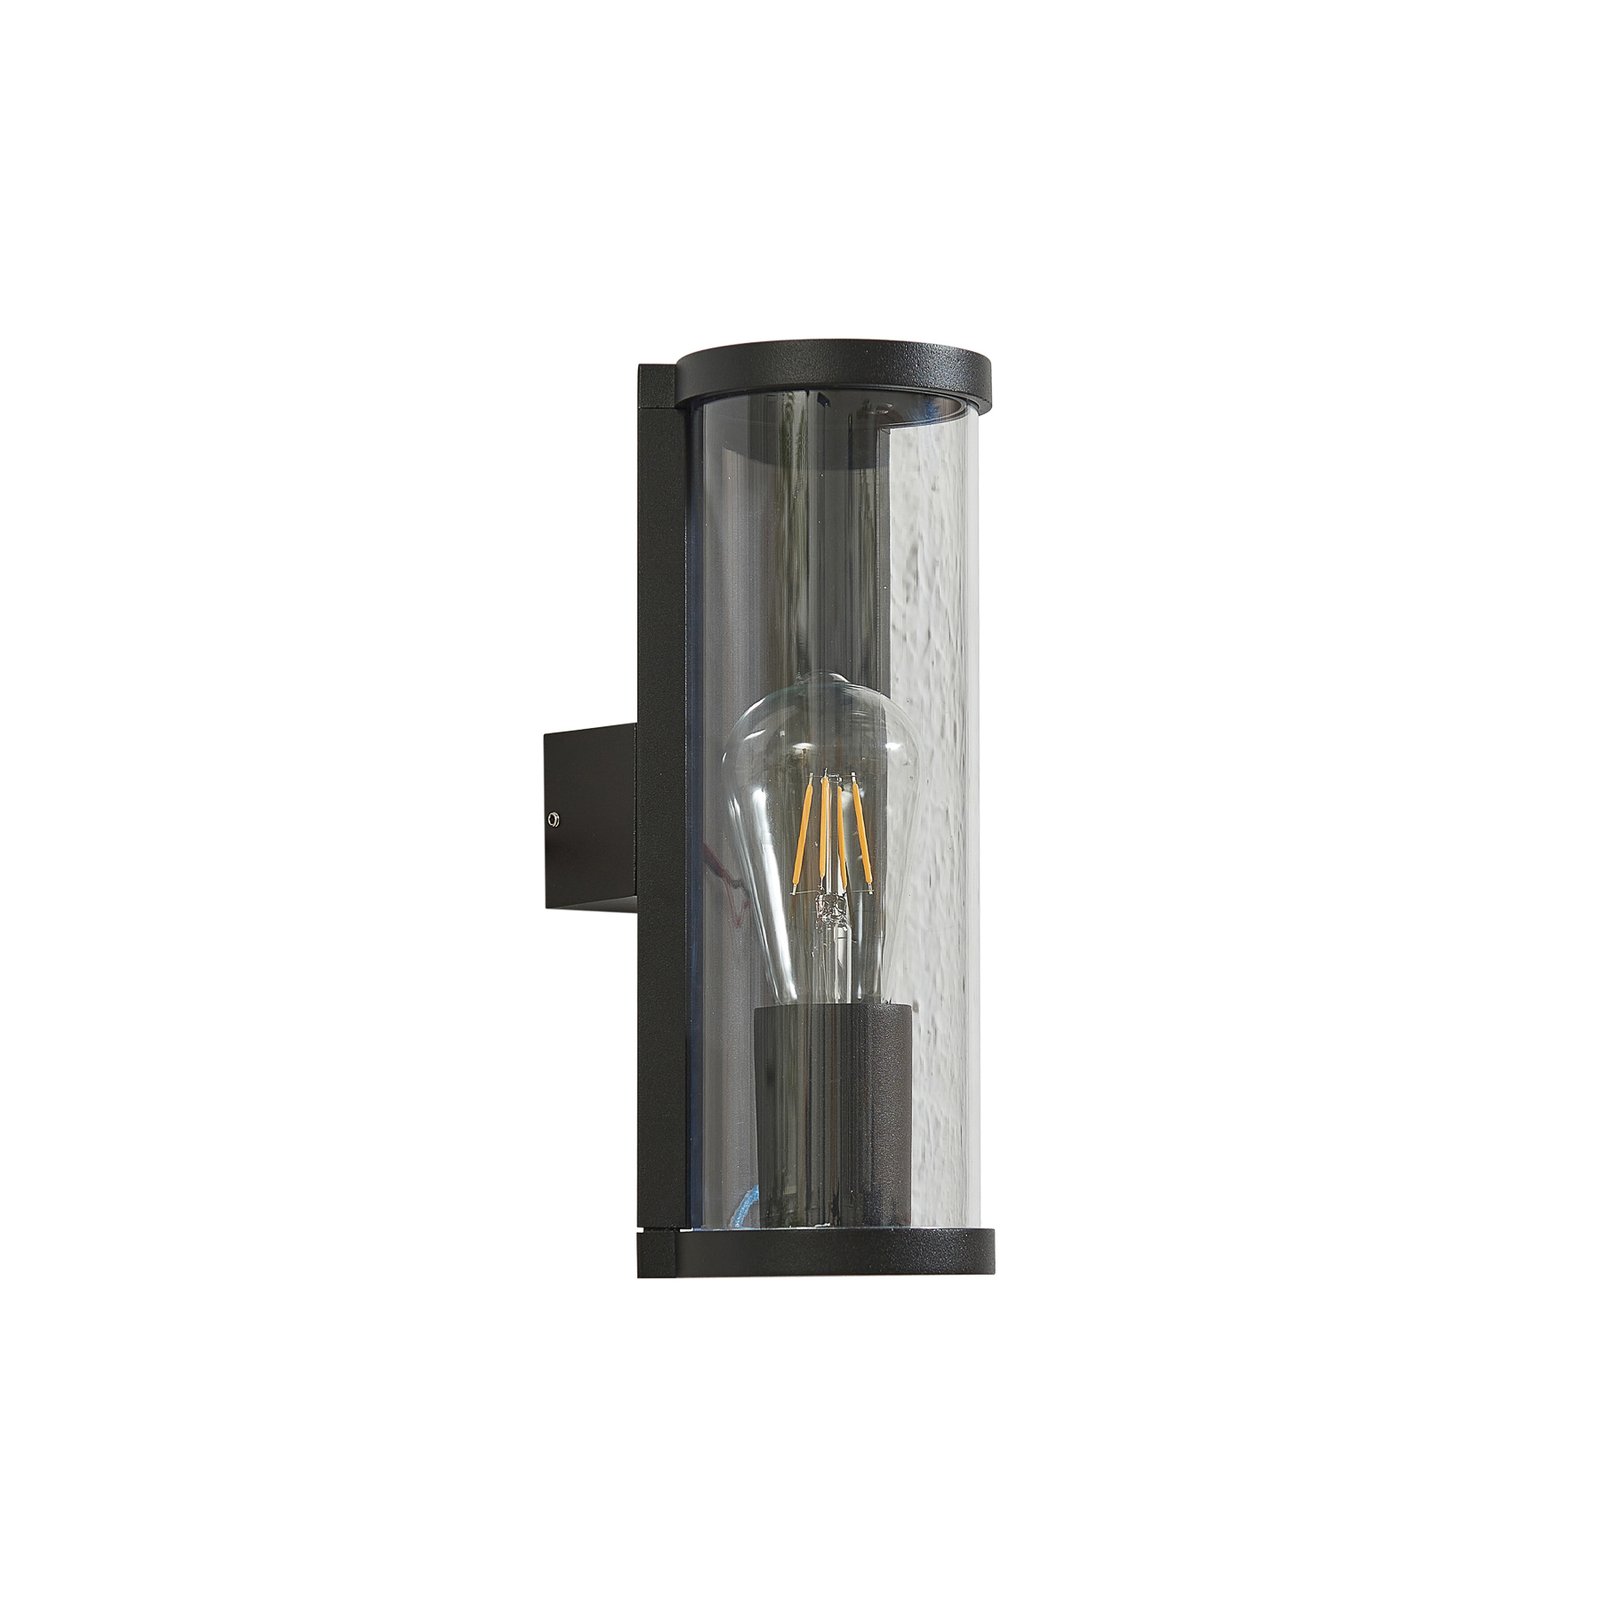 Venkovní nástěnné svítidlo Lucande Zanta, výška 28,2 cm, IP65, černá barva